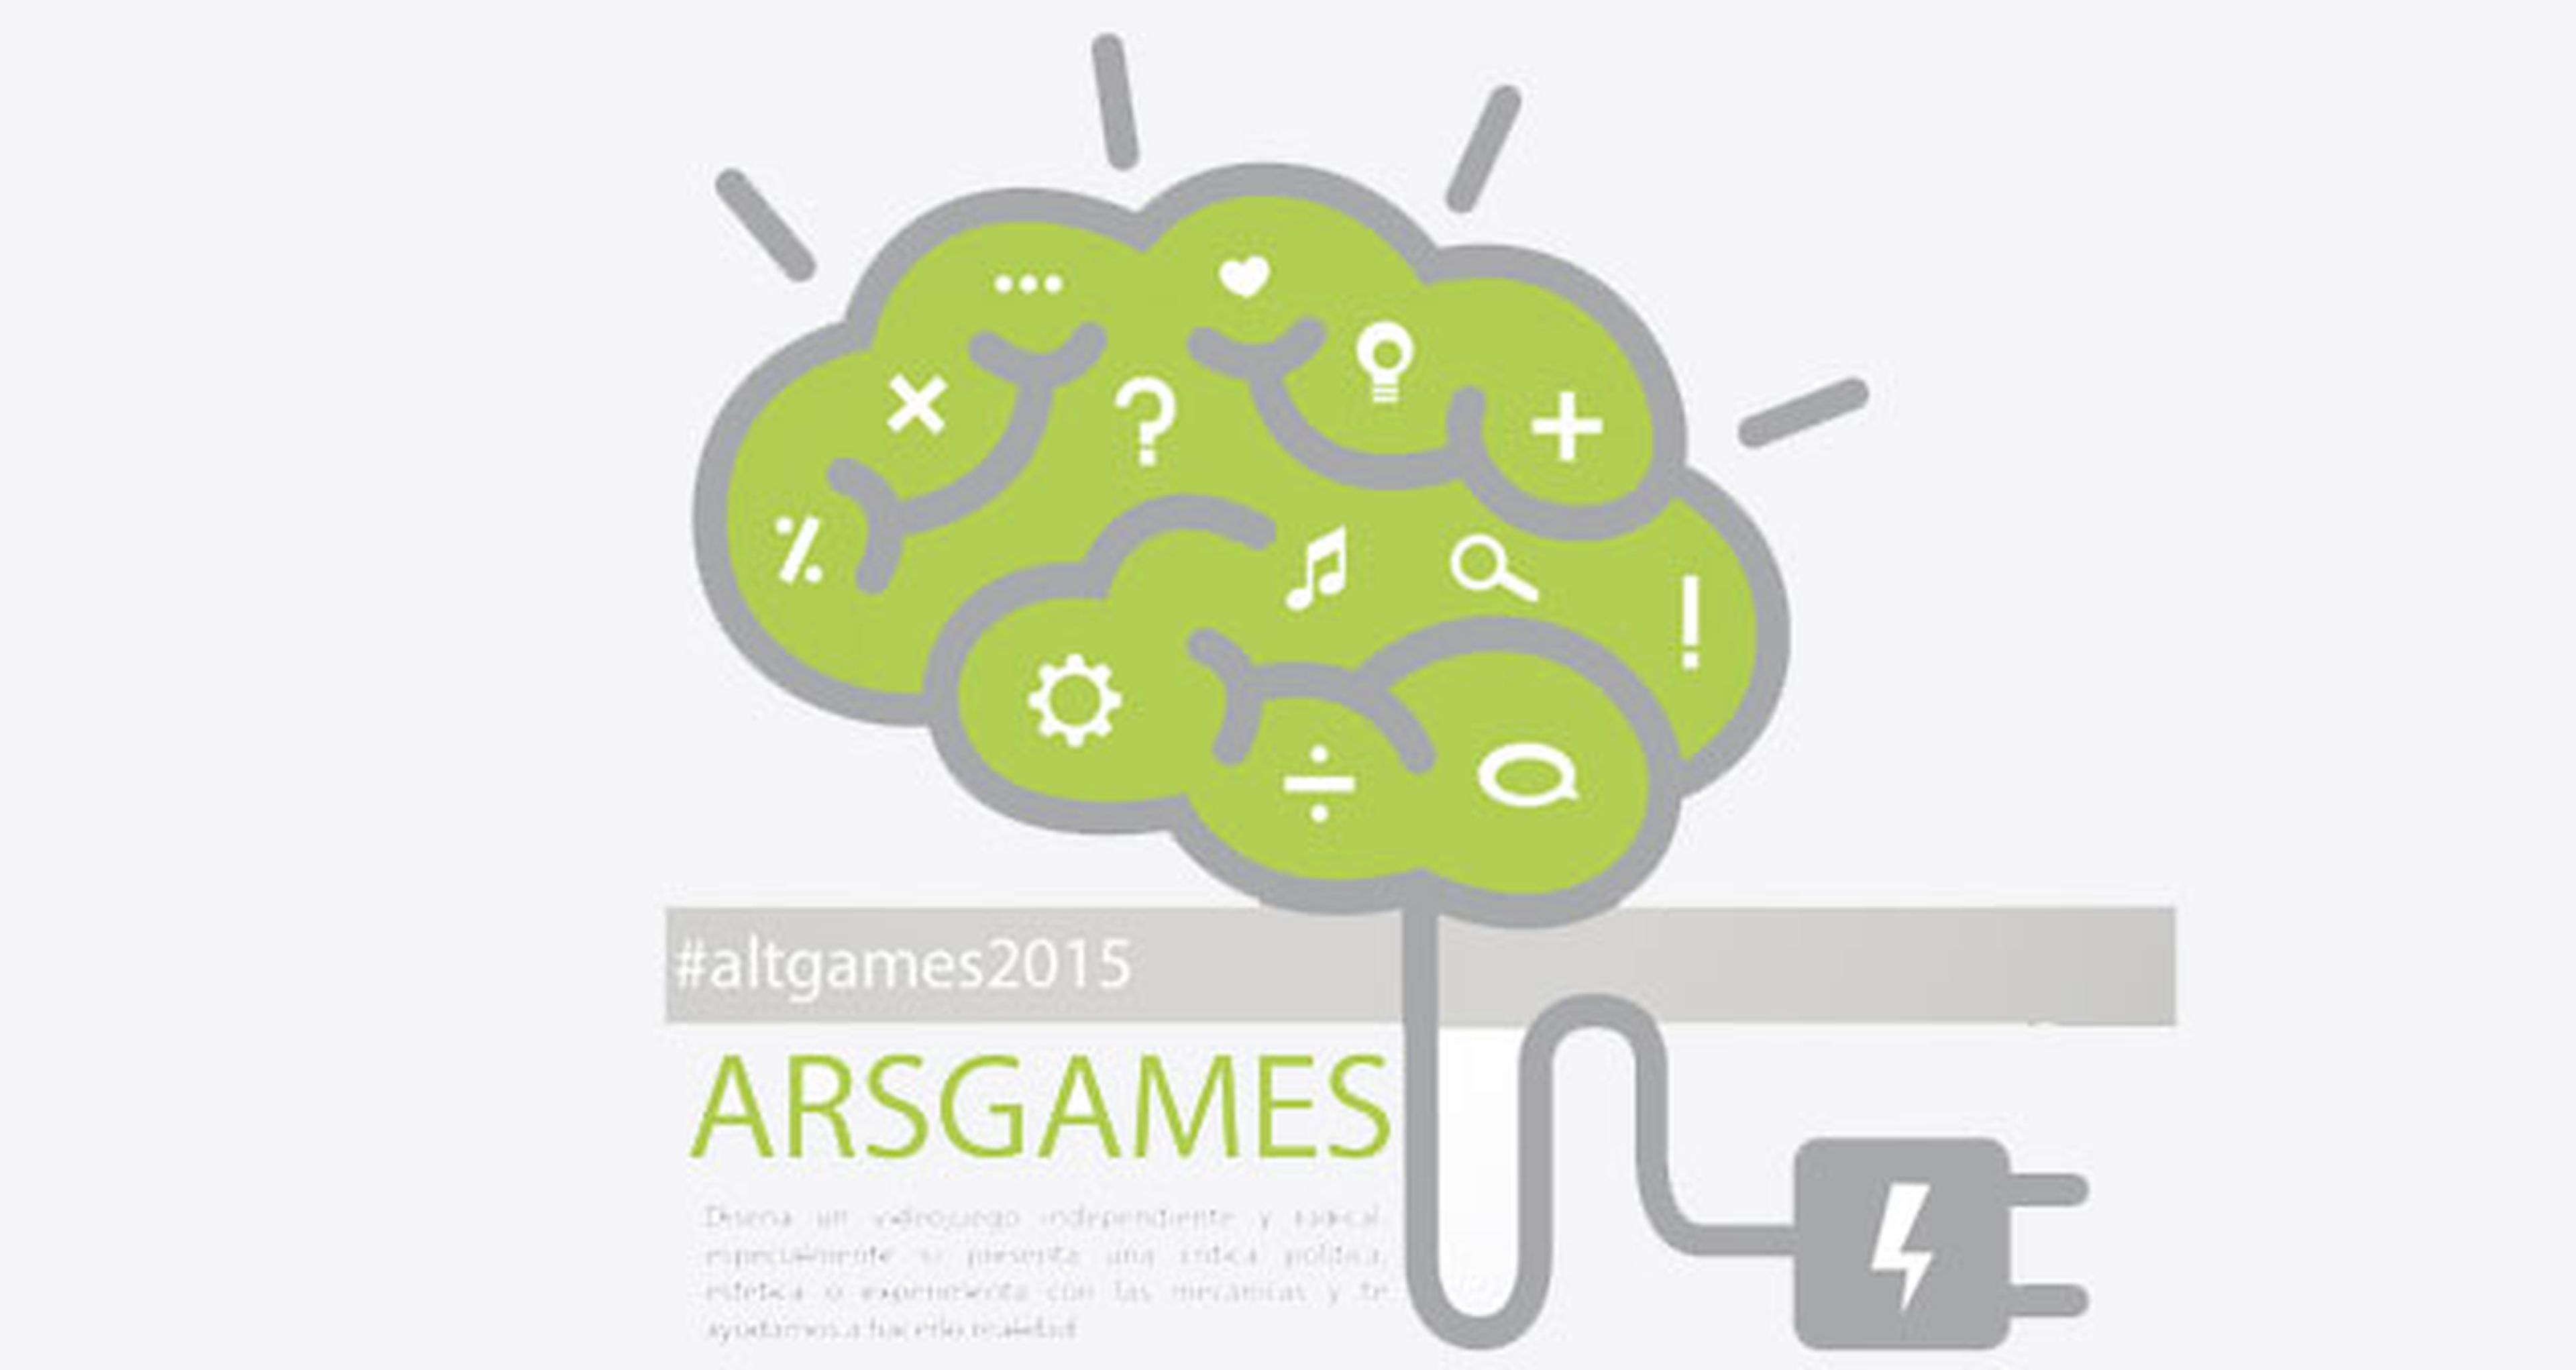 ARSGAMES impulsa la creación de juegos alternativos